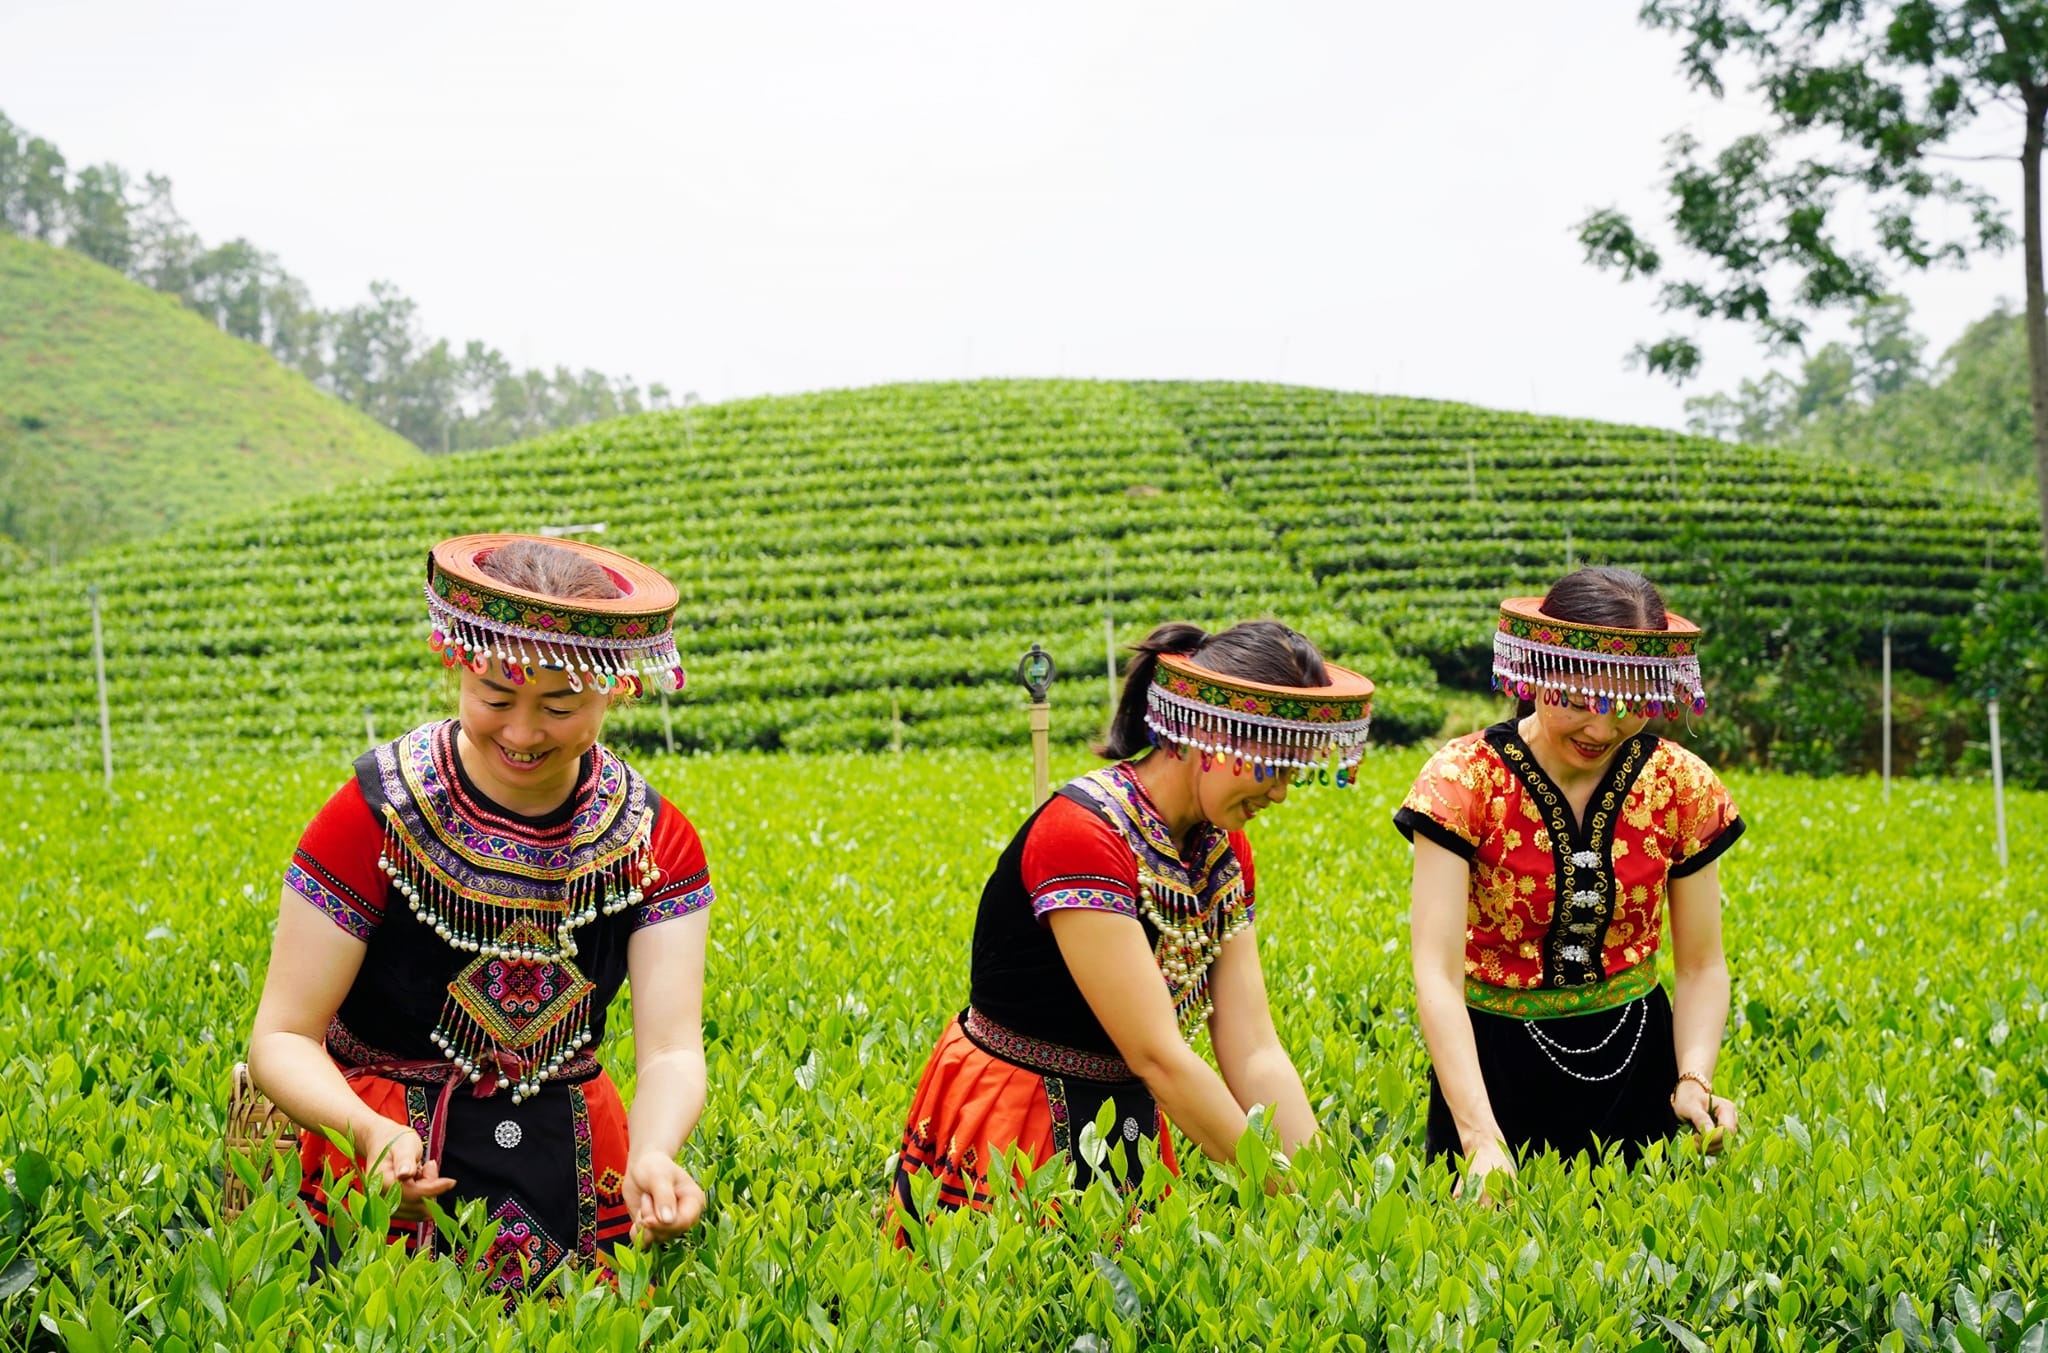 Phát triển sản phẩm Trà ướp hoa mộc – Điểm sáng của thị trường Trà ướp hương